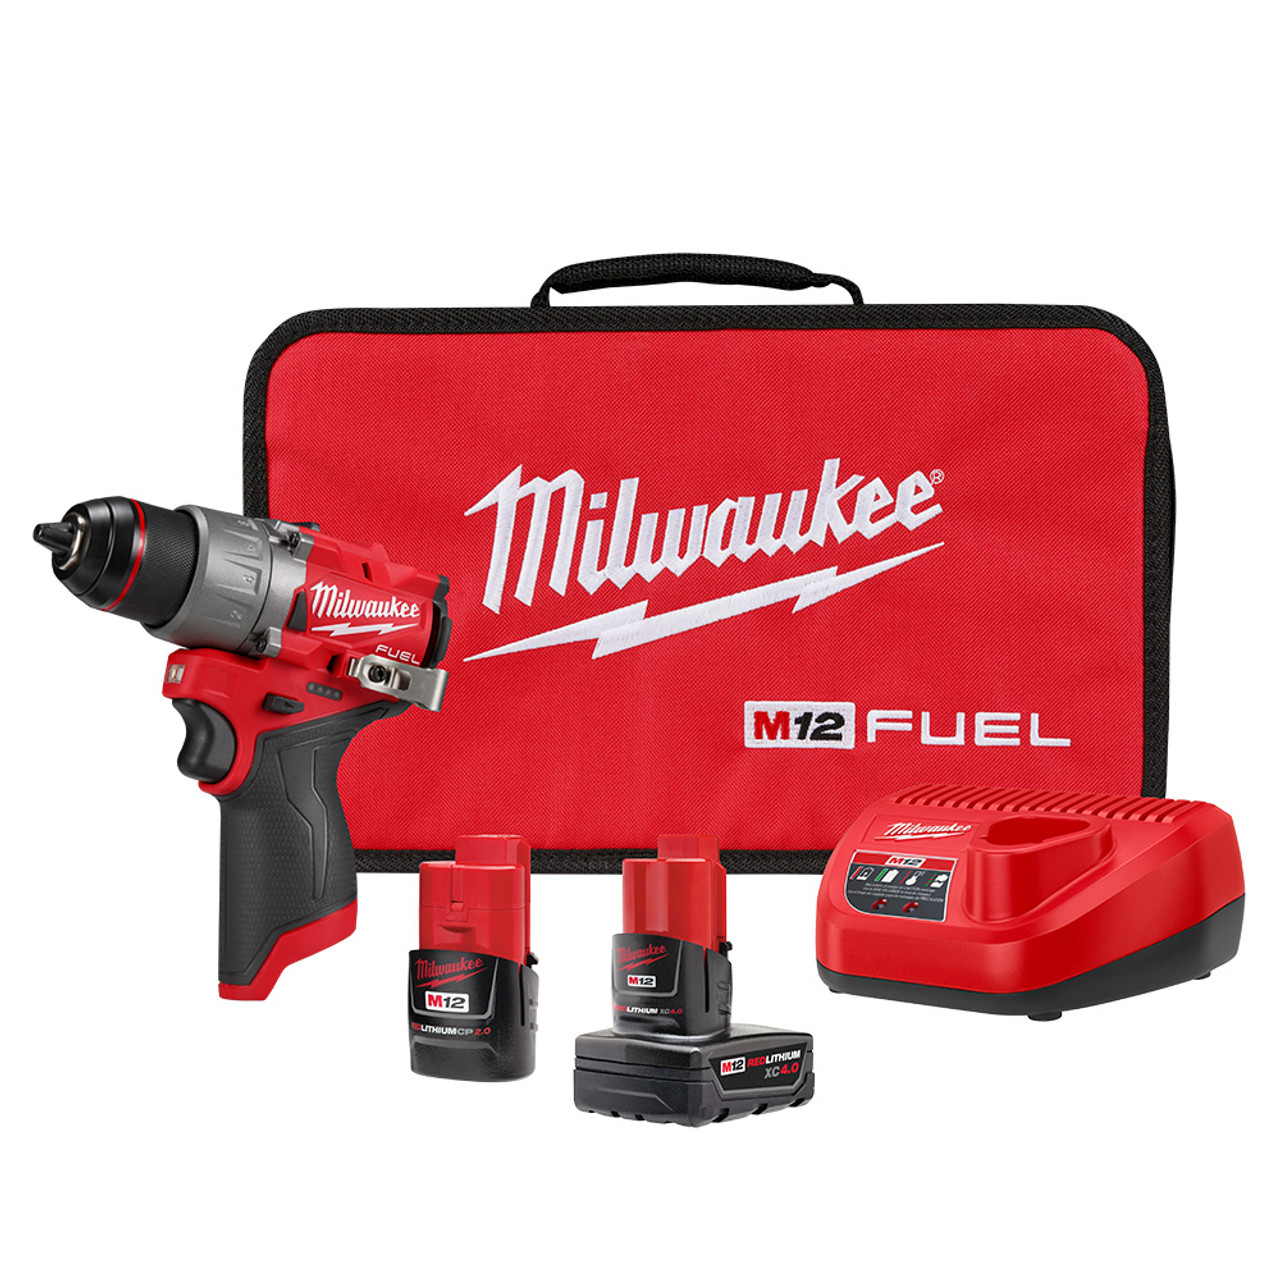 Milwaukee 3403-22 M12 FUEL 1/2 Drill/Driver Kit